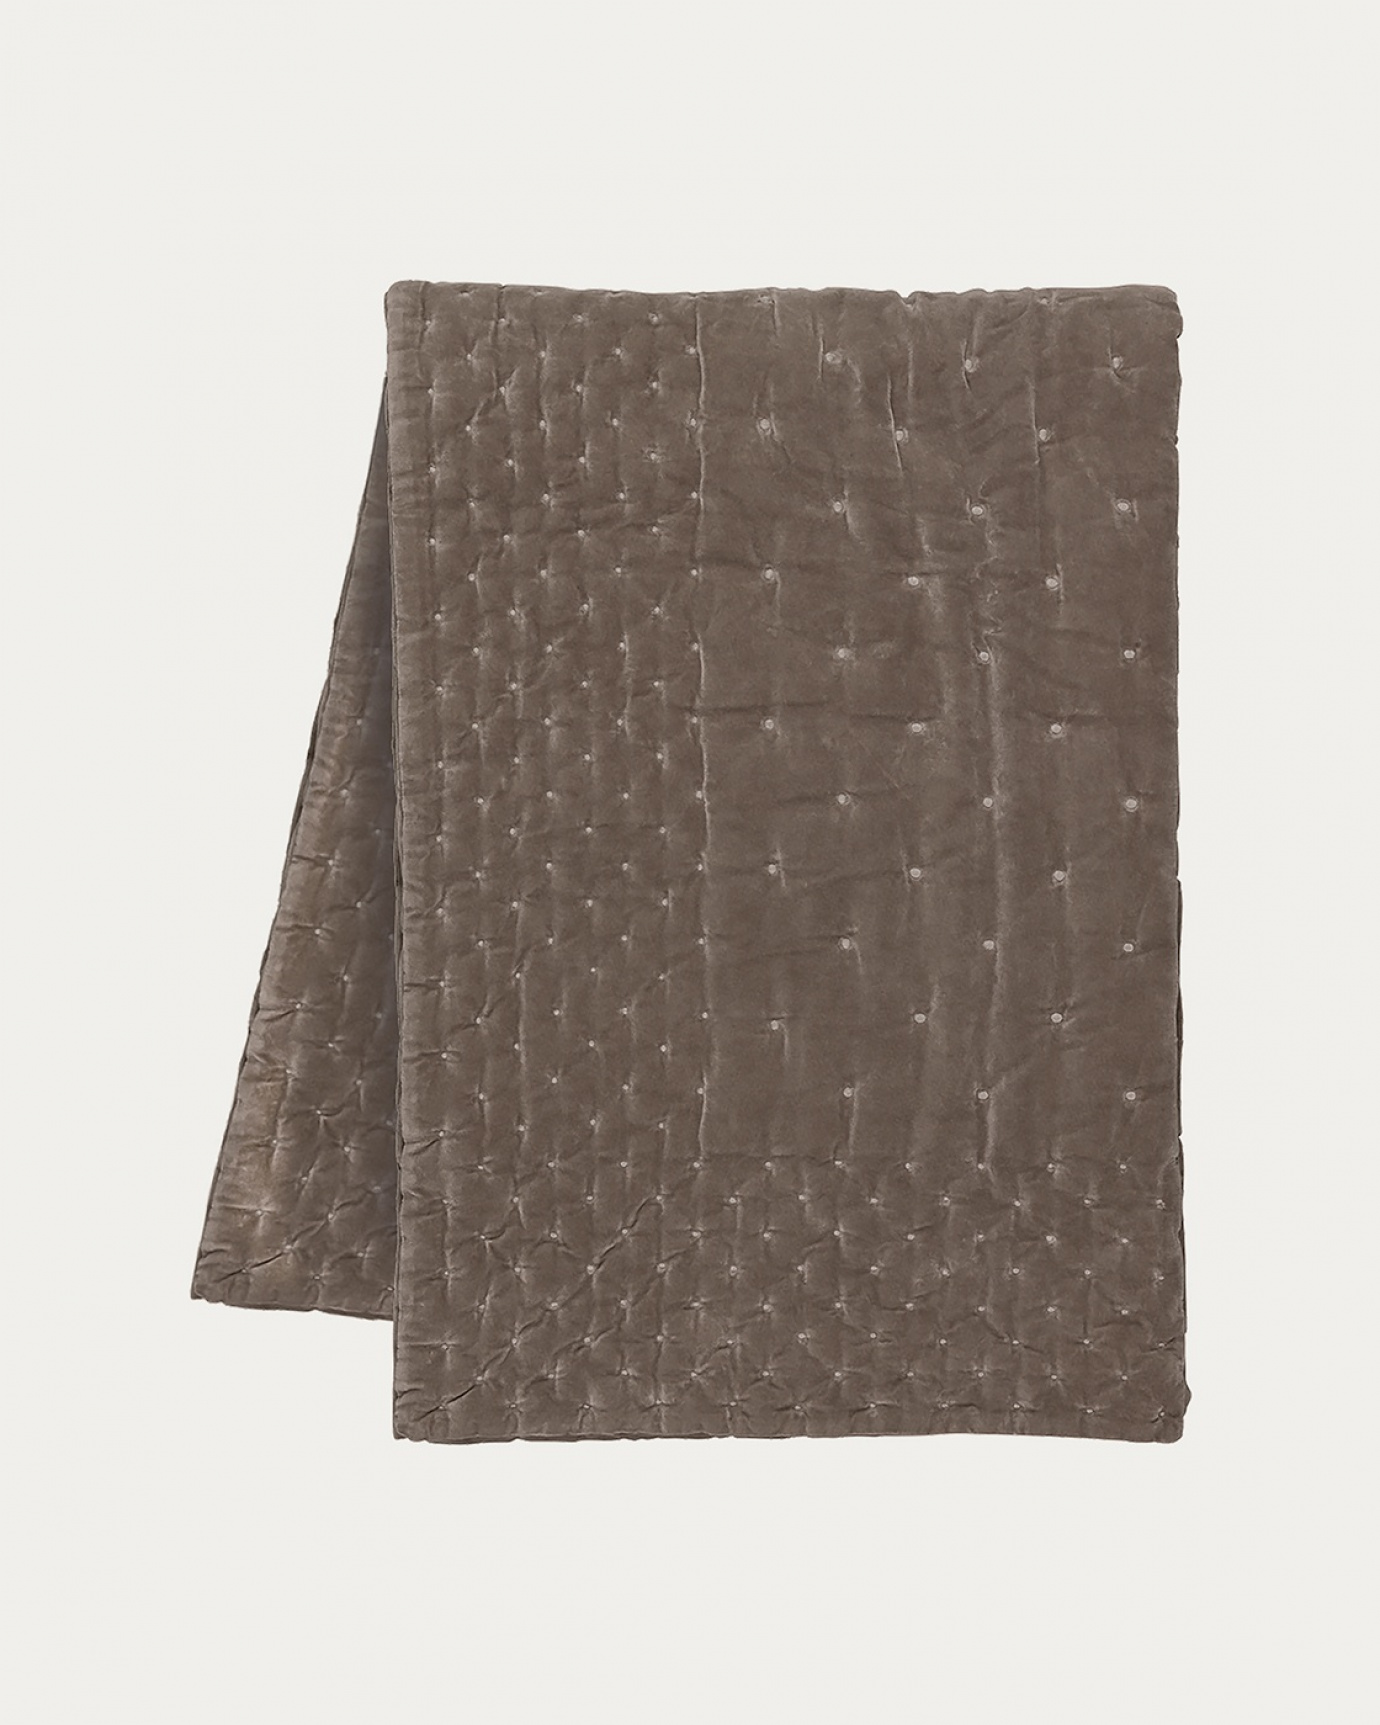 Produktbild maulwurfbraun Tagesdecke PAOLO aus weichem Baumwollsamt für Doppelbett von LINUM DESIGN. Größe 270x260 cm.